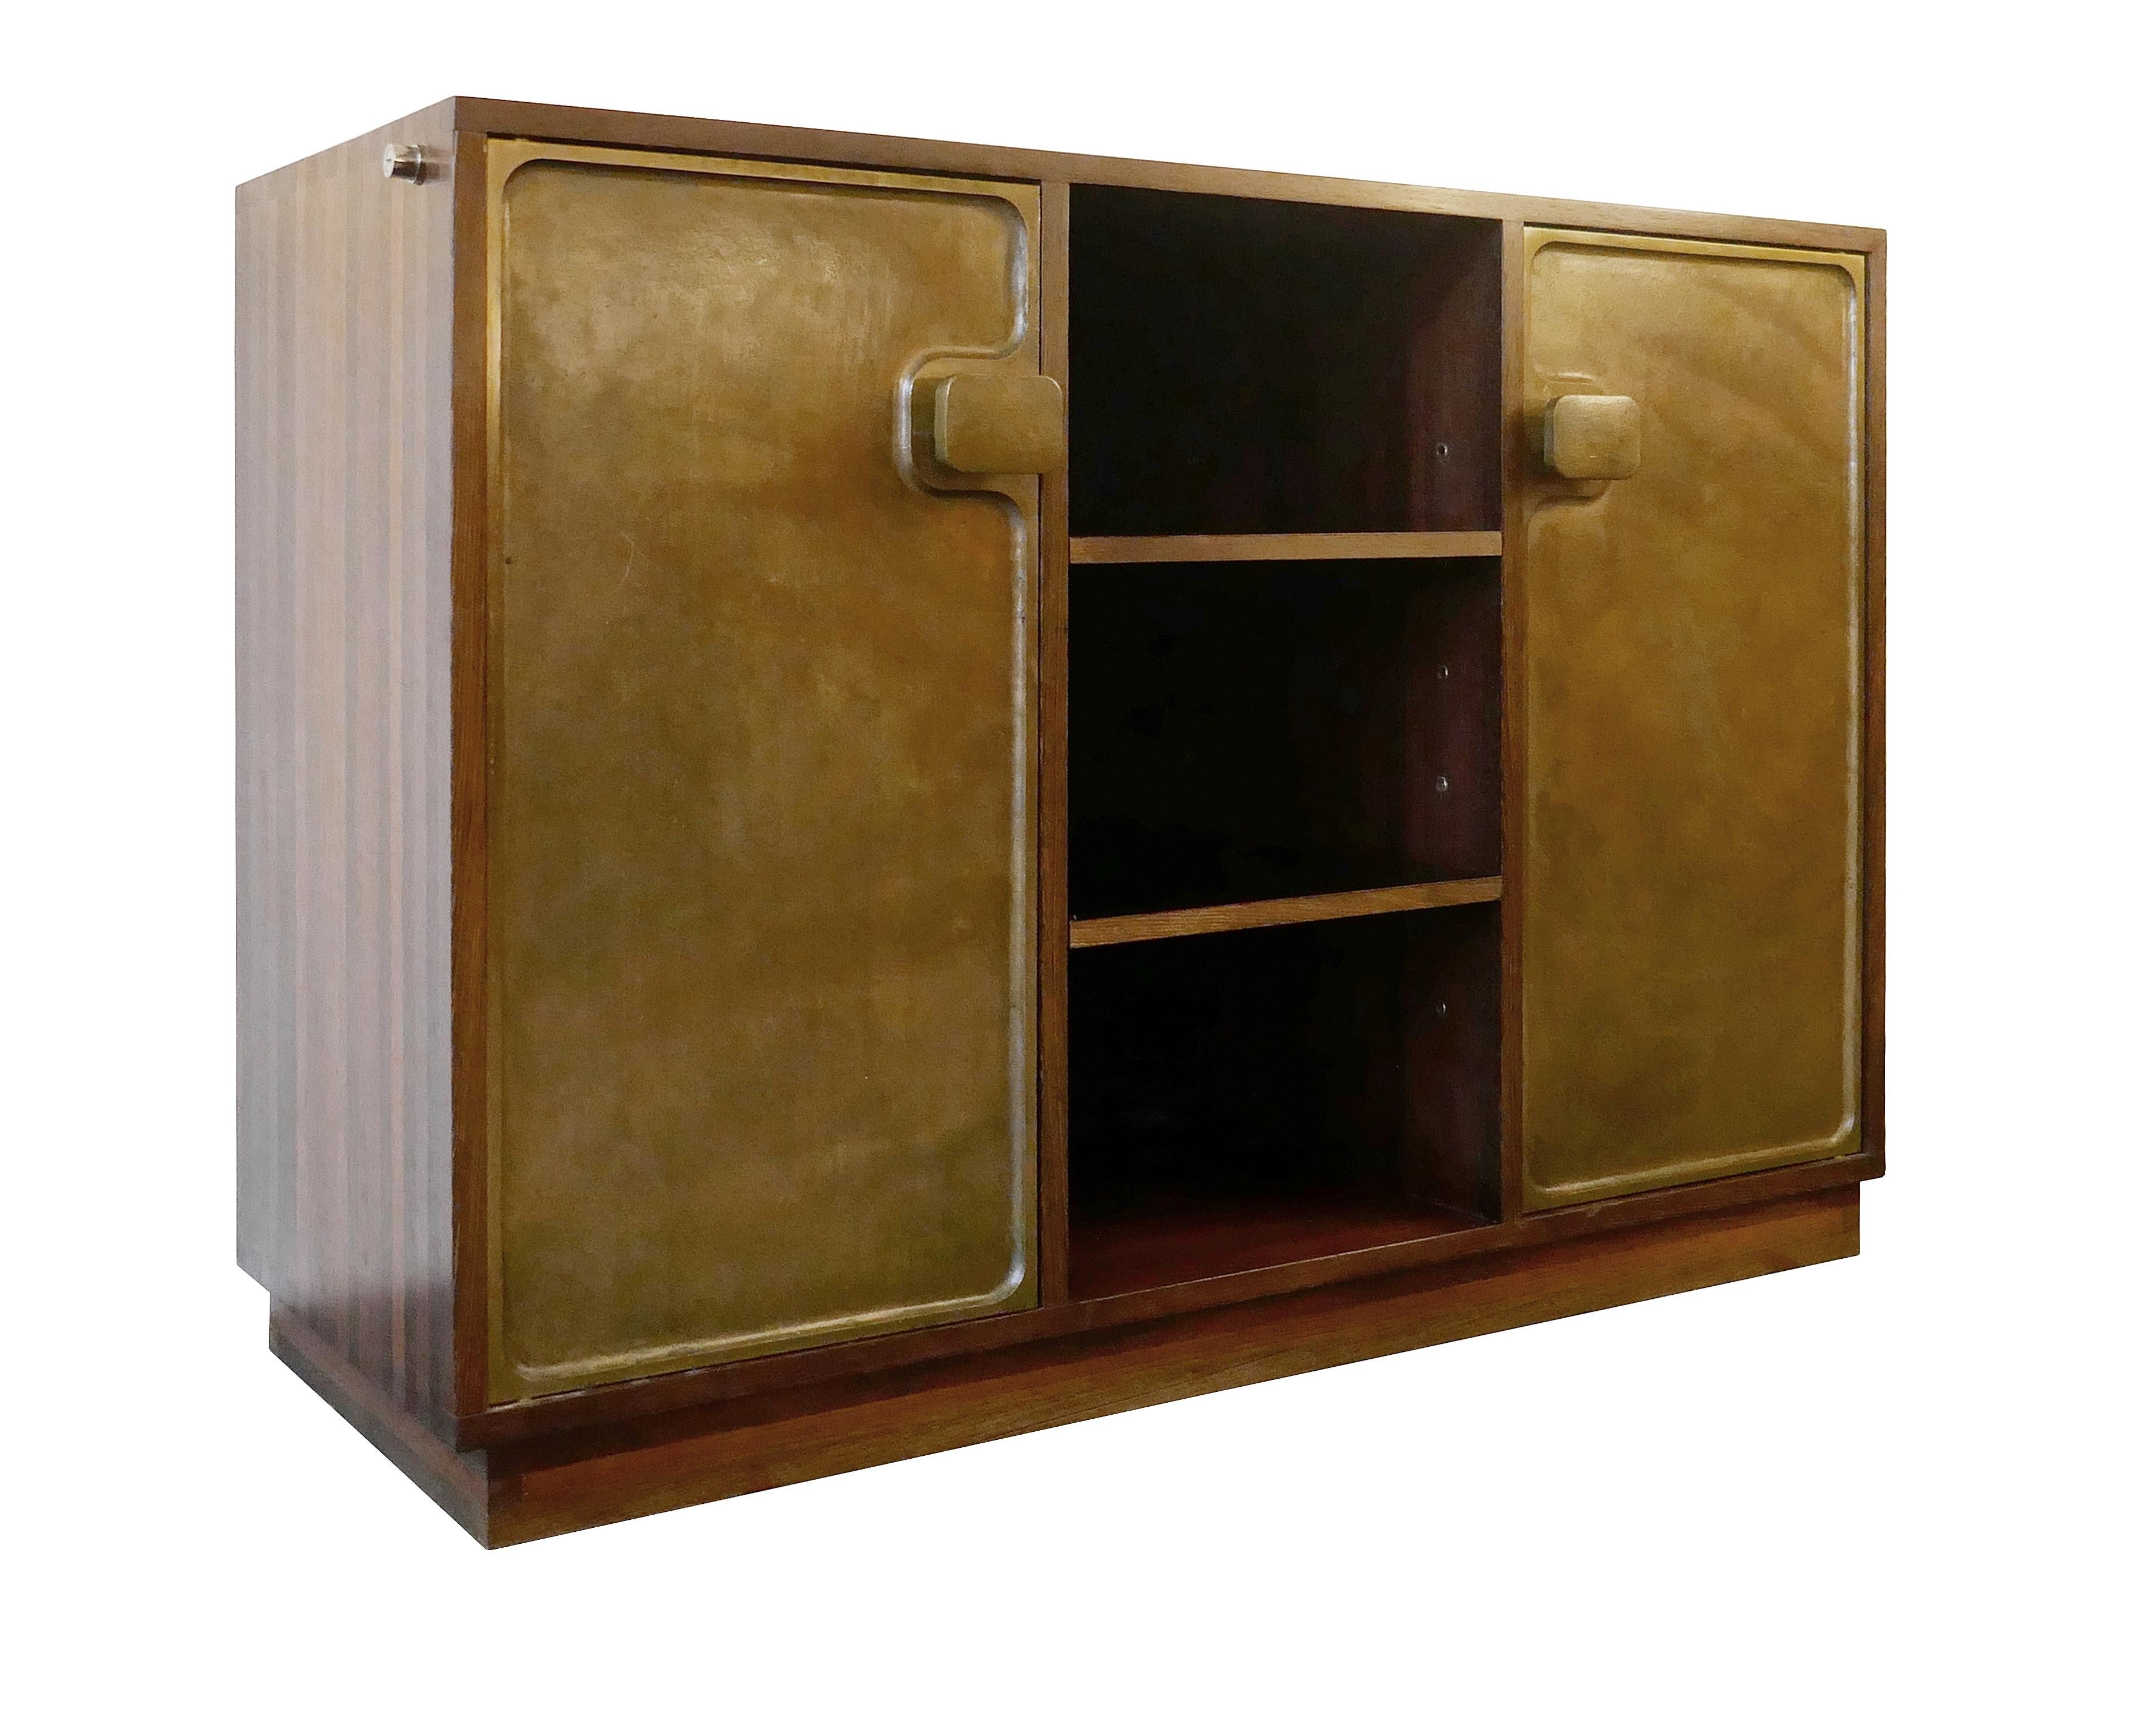 Bergwood cabinet with bronze doors attributed to Antoine Callebaut, Belgium.